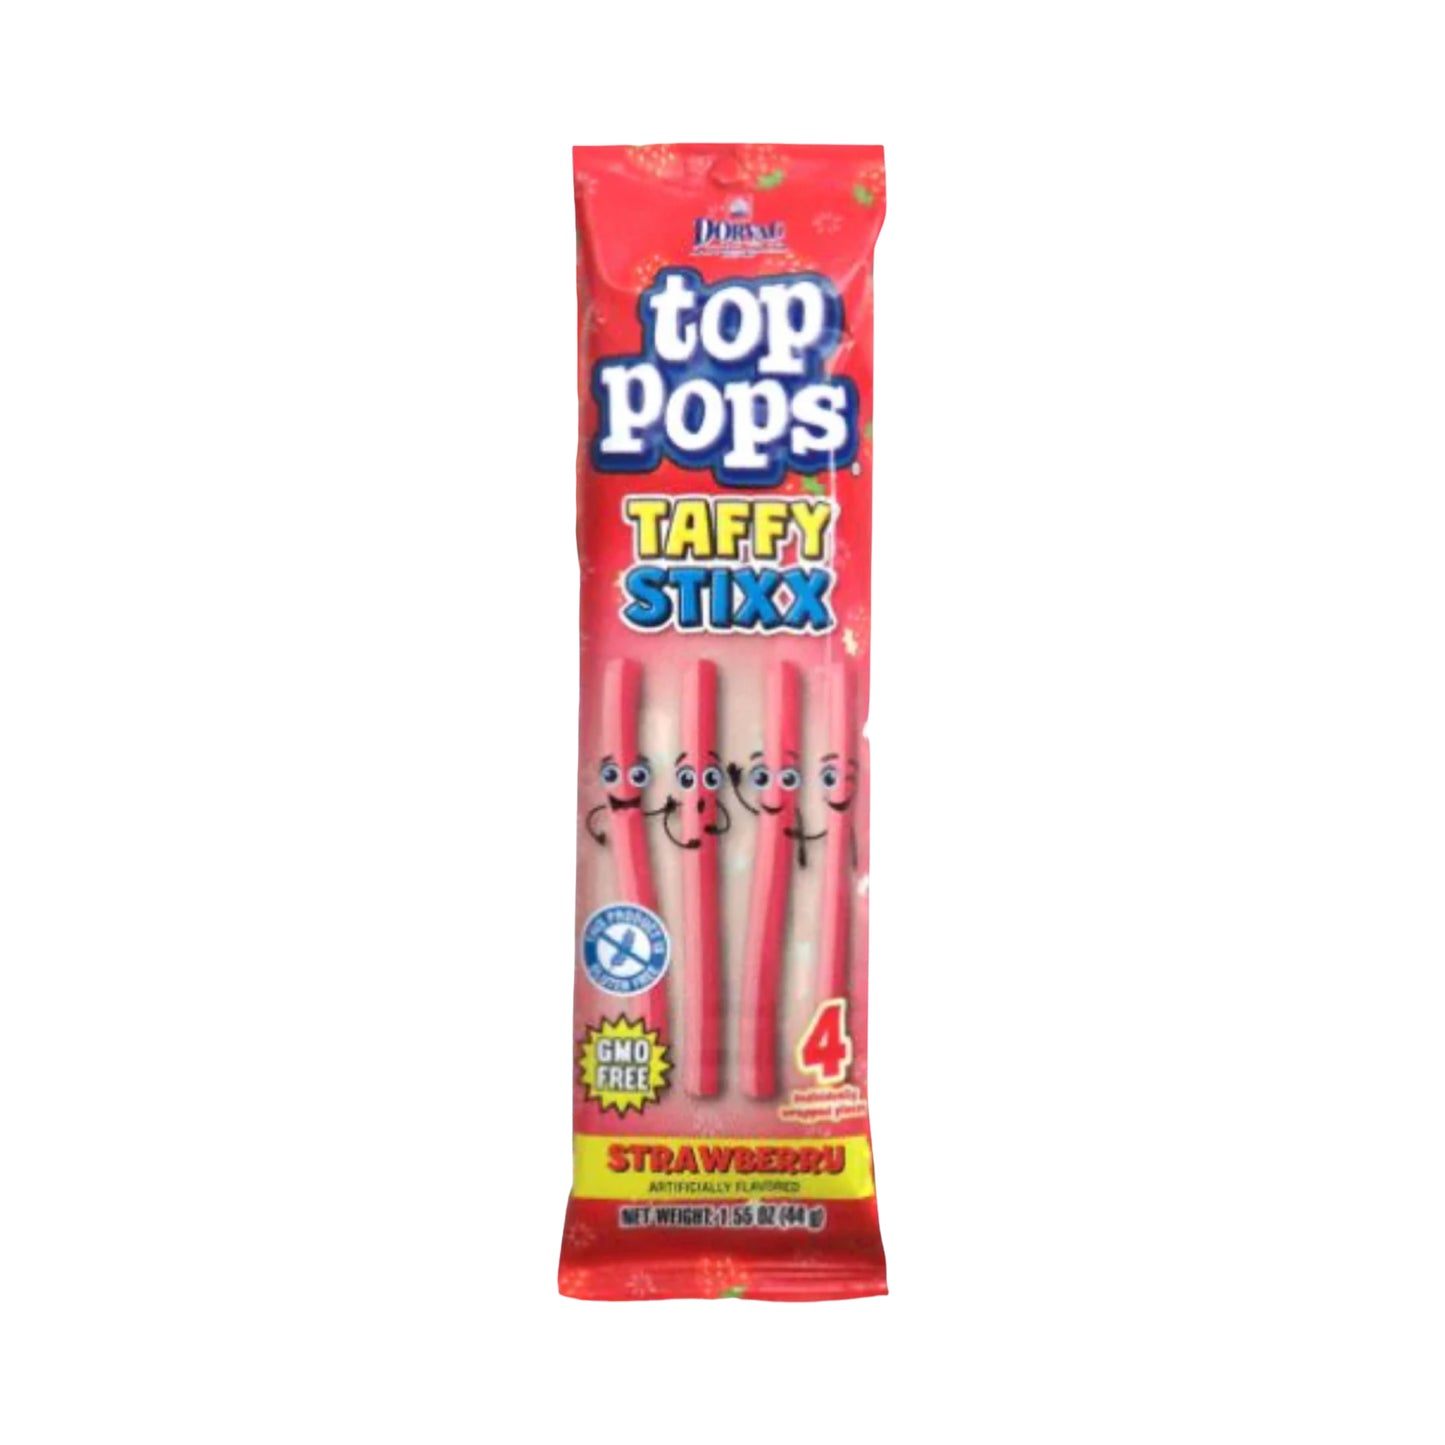 Top Pops Taffy Stixx Strawberry - 44g